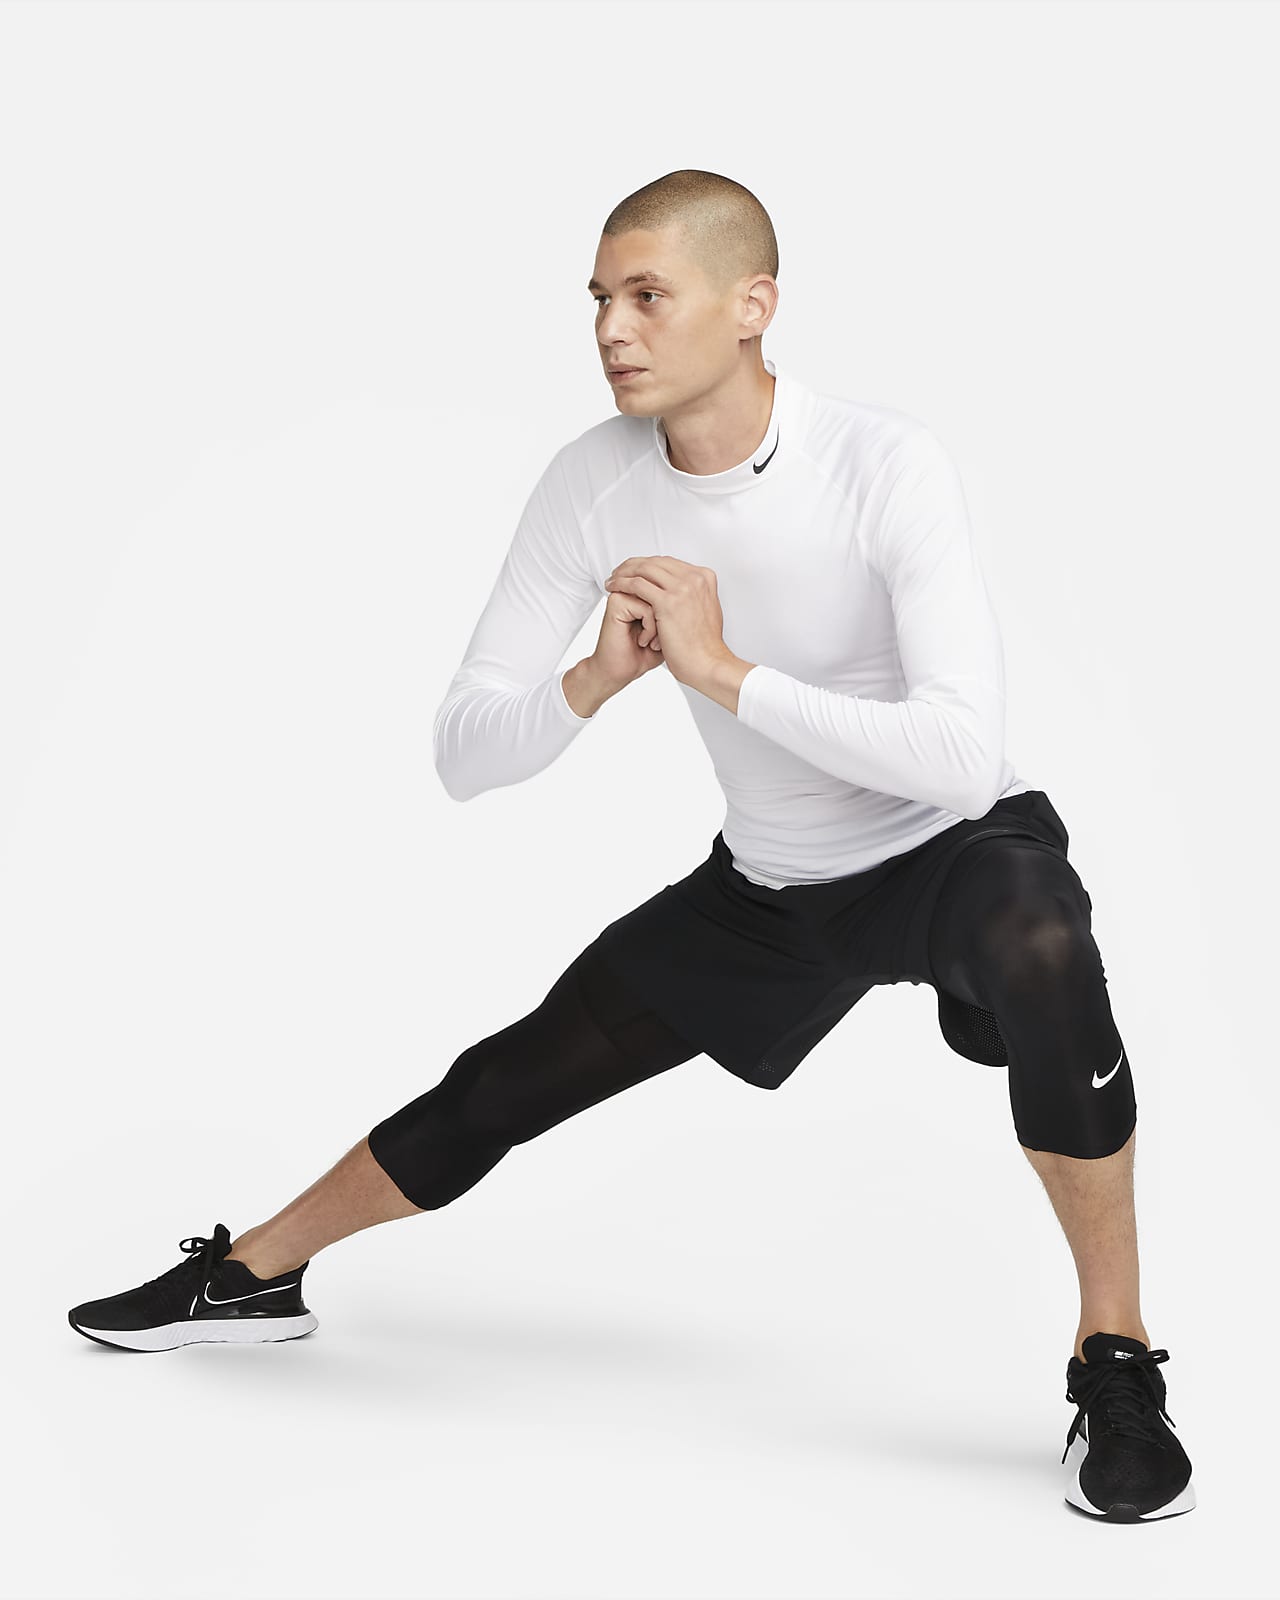 Hombre Entrenamiento & gym Pants y tights. Nike MX